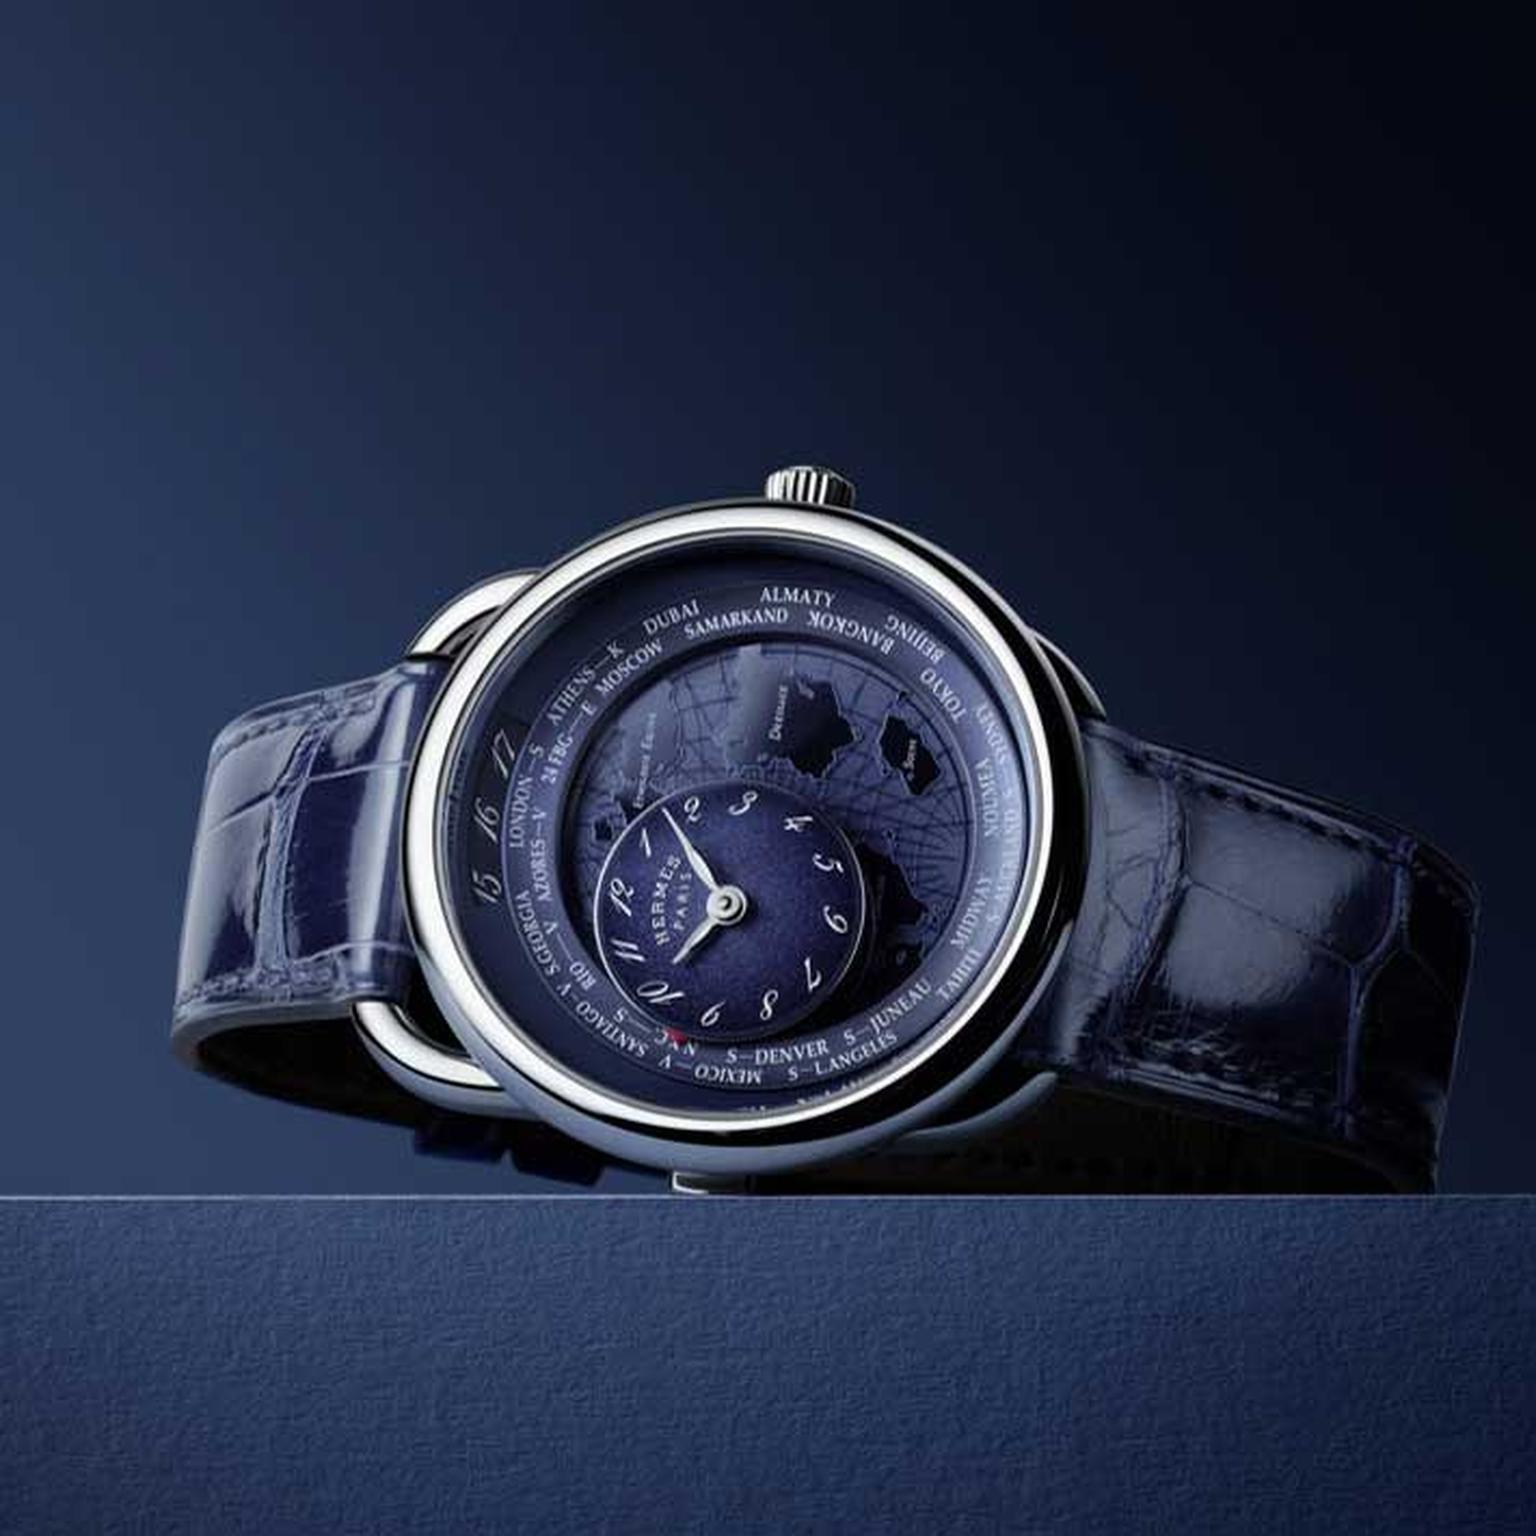 Hermès Arceau Le temps voyageur men’s watch